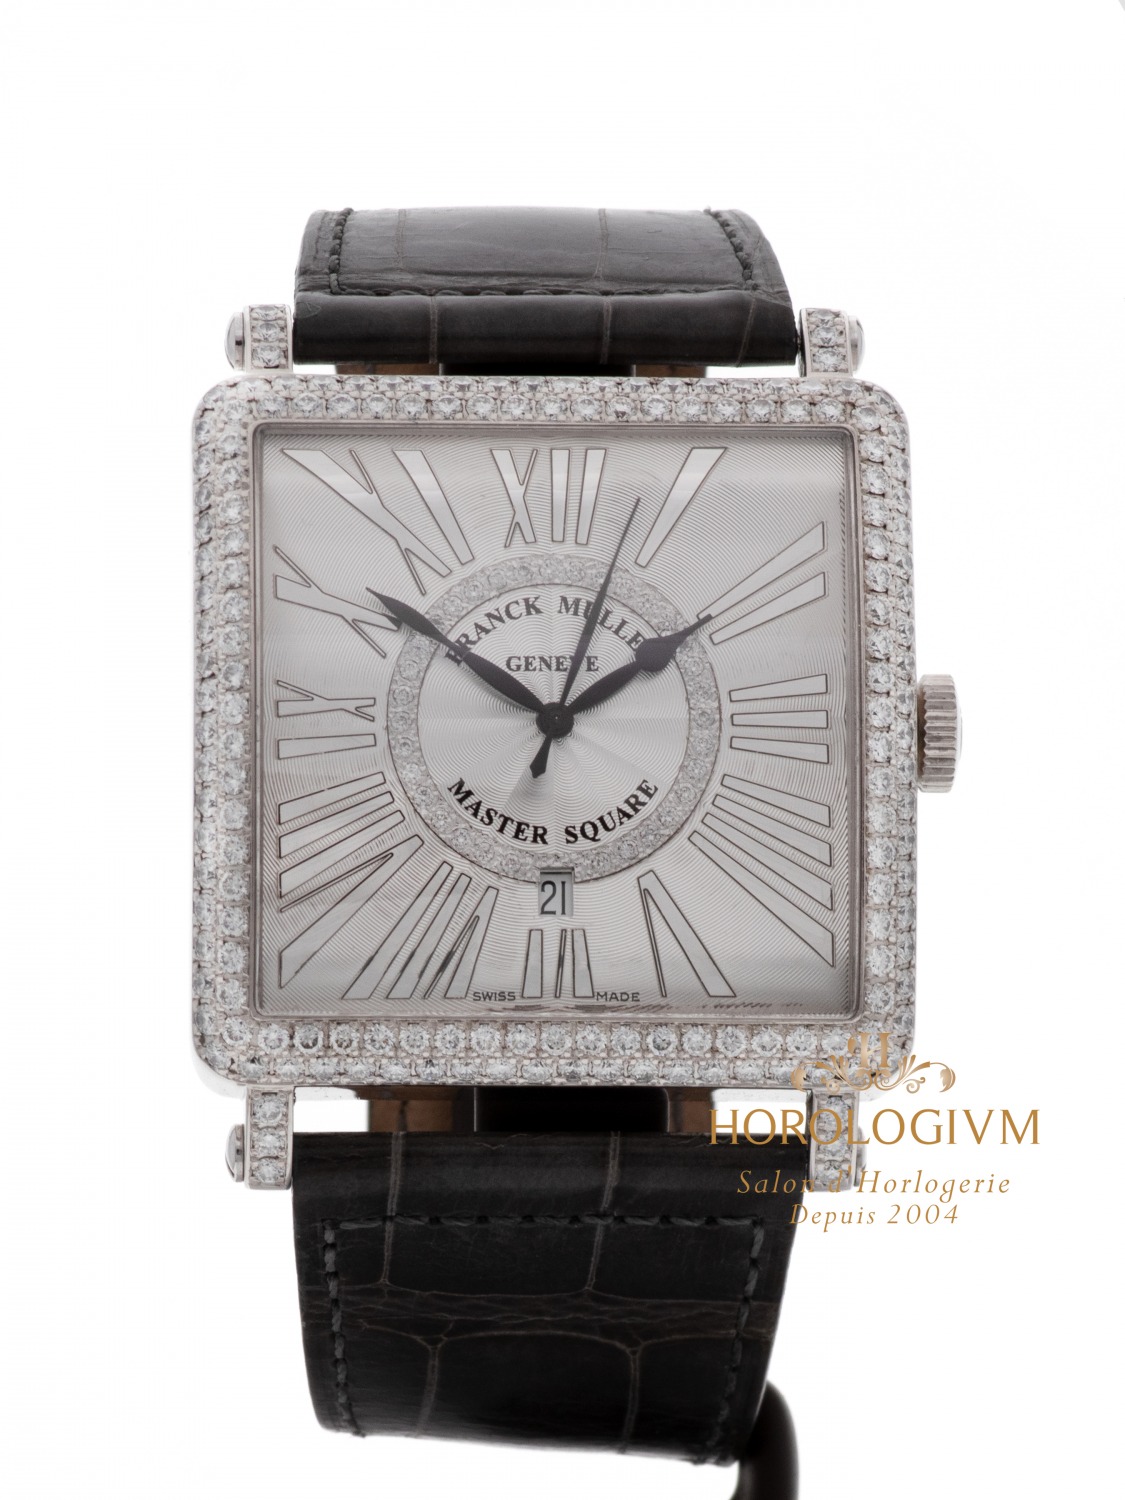 Franck Muller Master Square Date 42.3X42.3 MM Ref. 6000 K SC DT D CD 1R, watch, white gold & diamond set